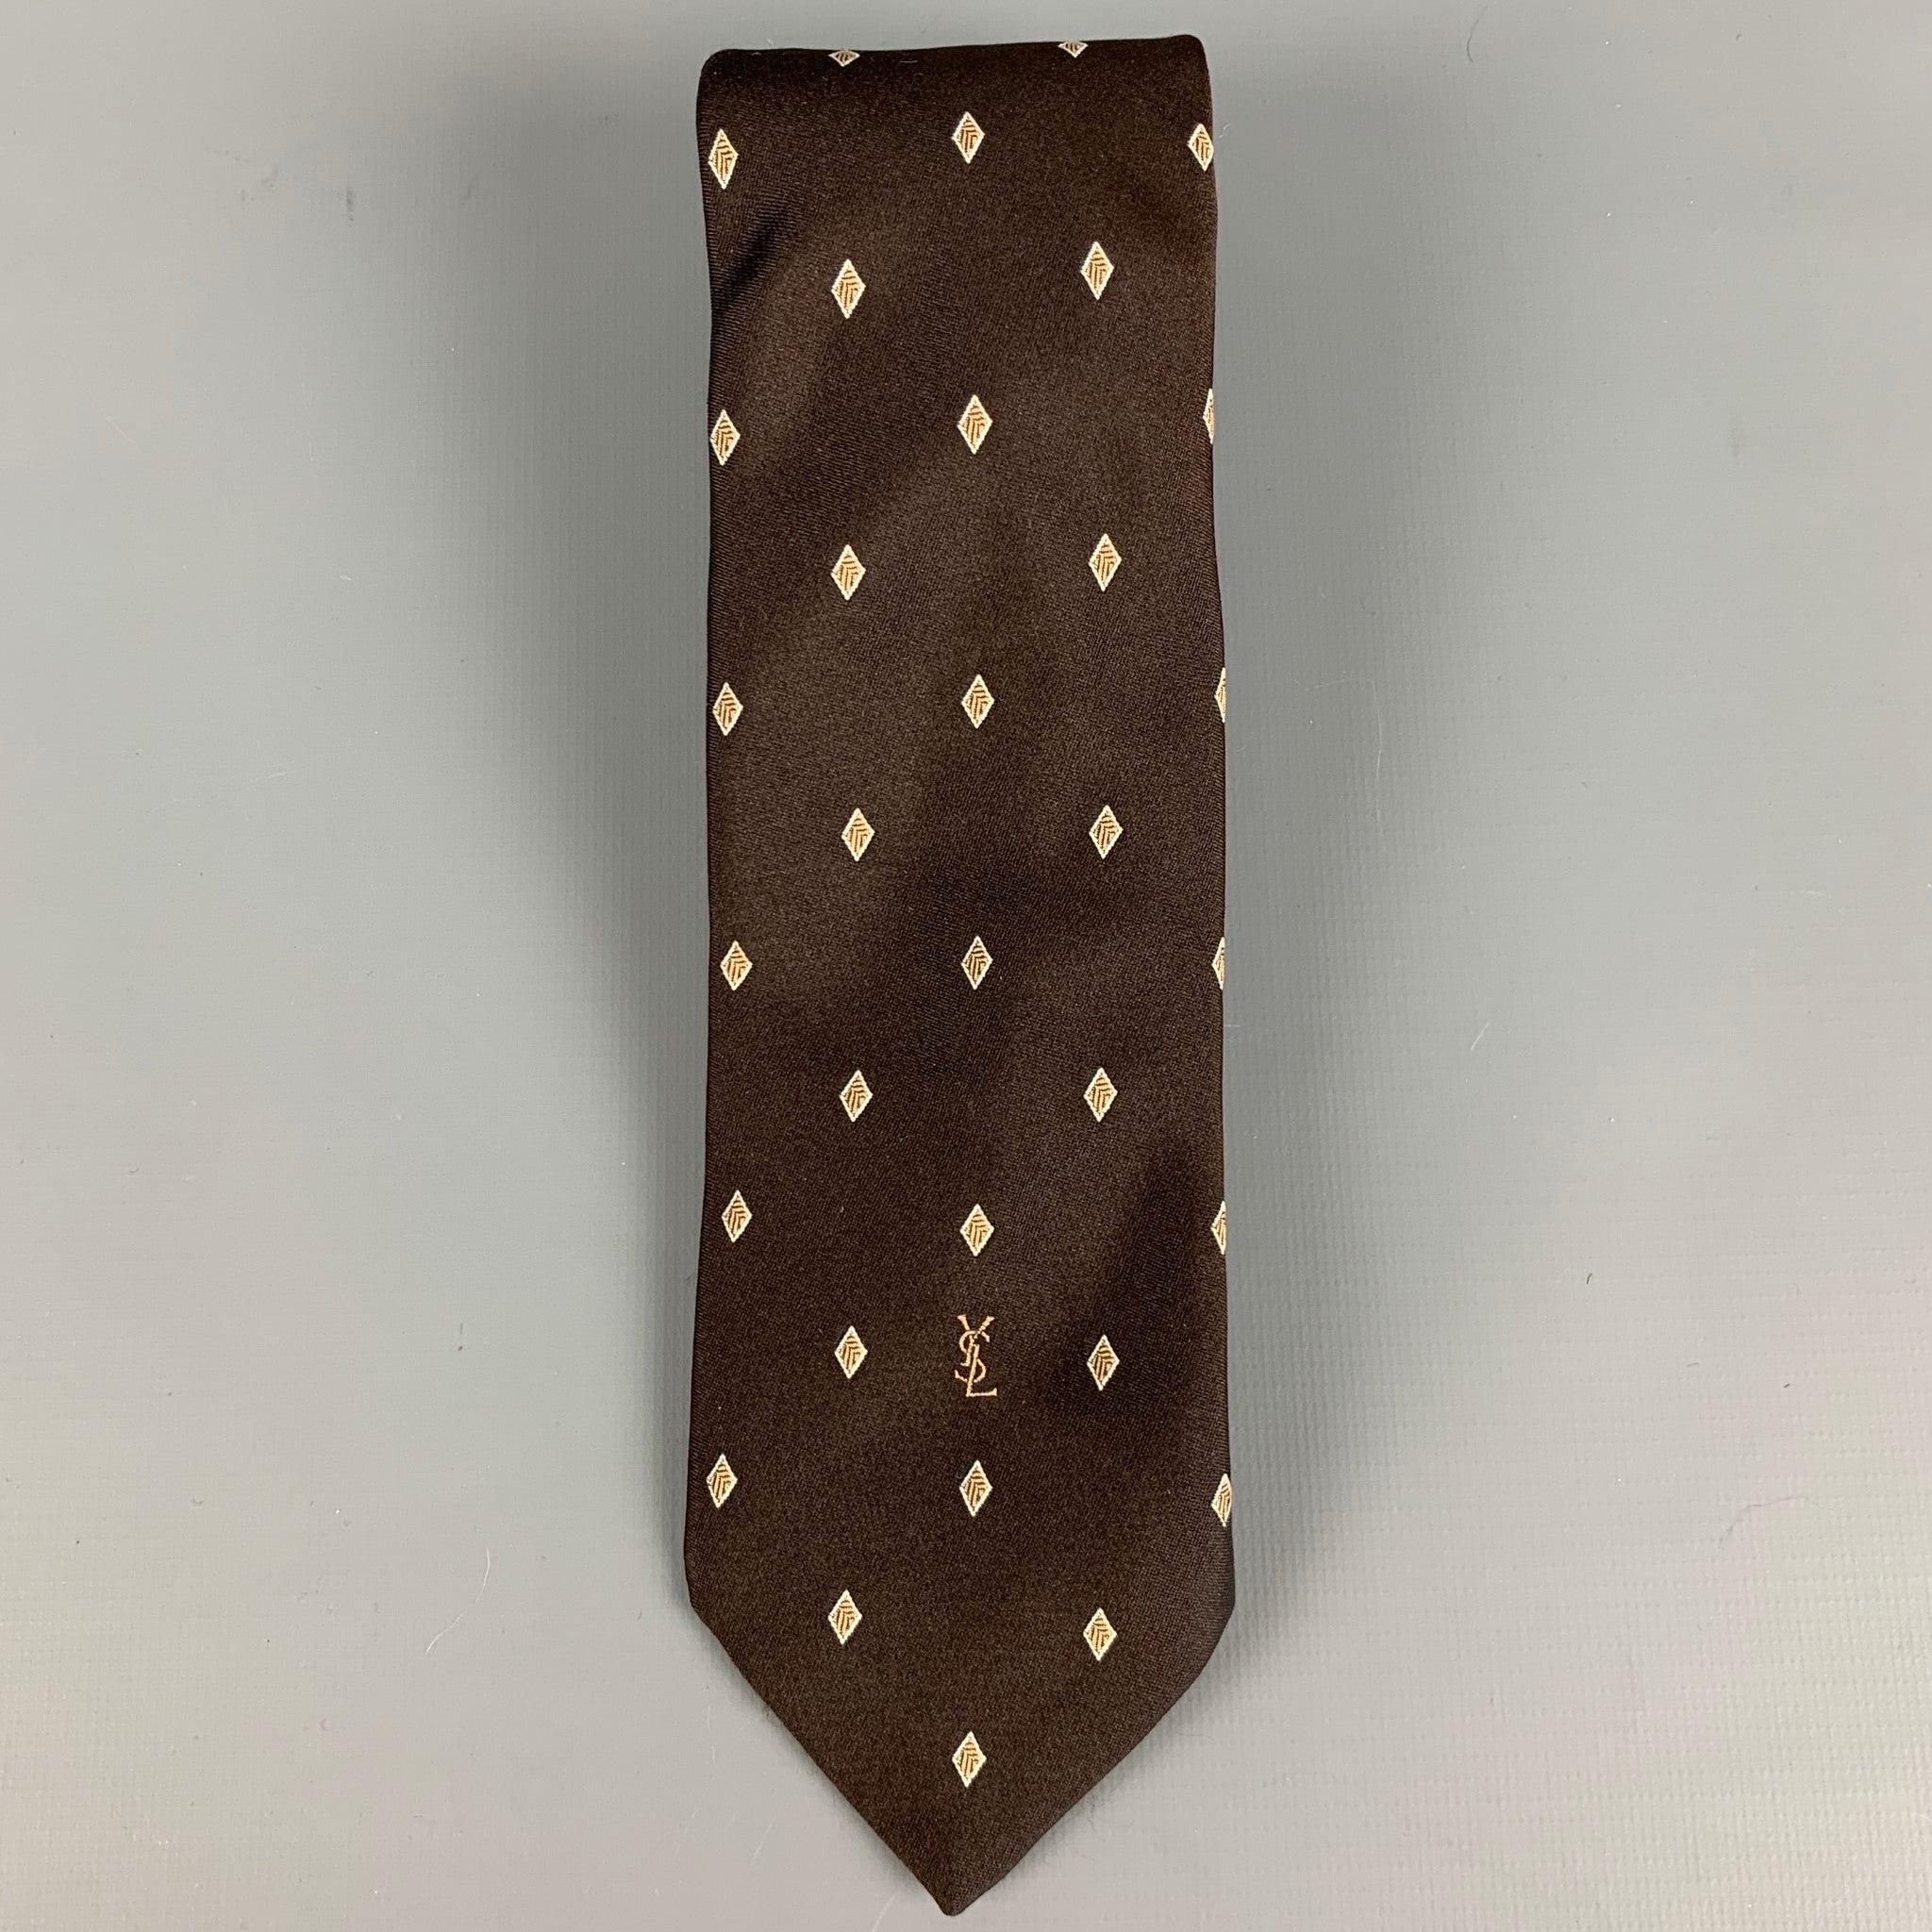 YVES SAINT LAURENT
Krawatte aus braunem Seidenstoff mit gelbem Rautenjacquardmuster und schmaler Passform. Ausgezeichneter Pre-Owned Zustand. 

Abmessungen: 
  Breite: 2,5 Zoll Länge: 57 Zoll 
  
  
 
Referenz: 127791
Kategorie: Krawatte
Mehr